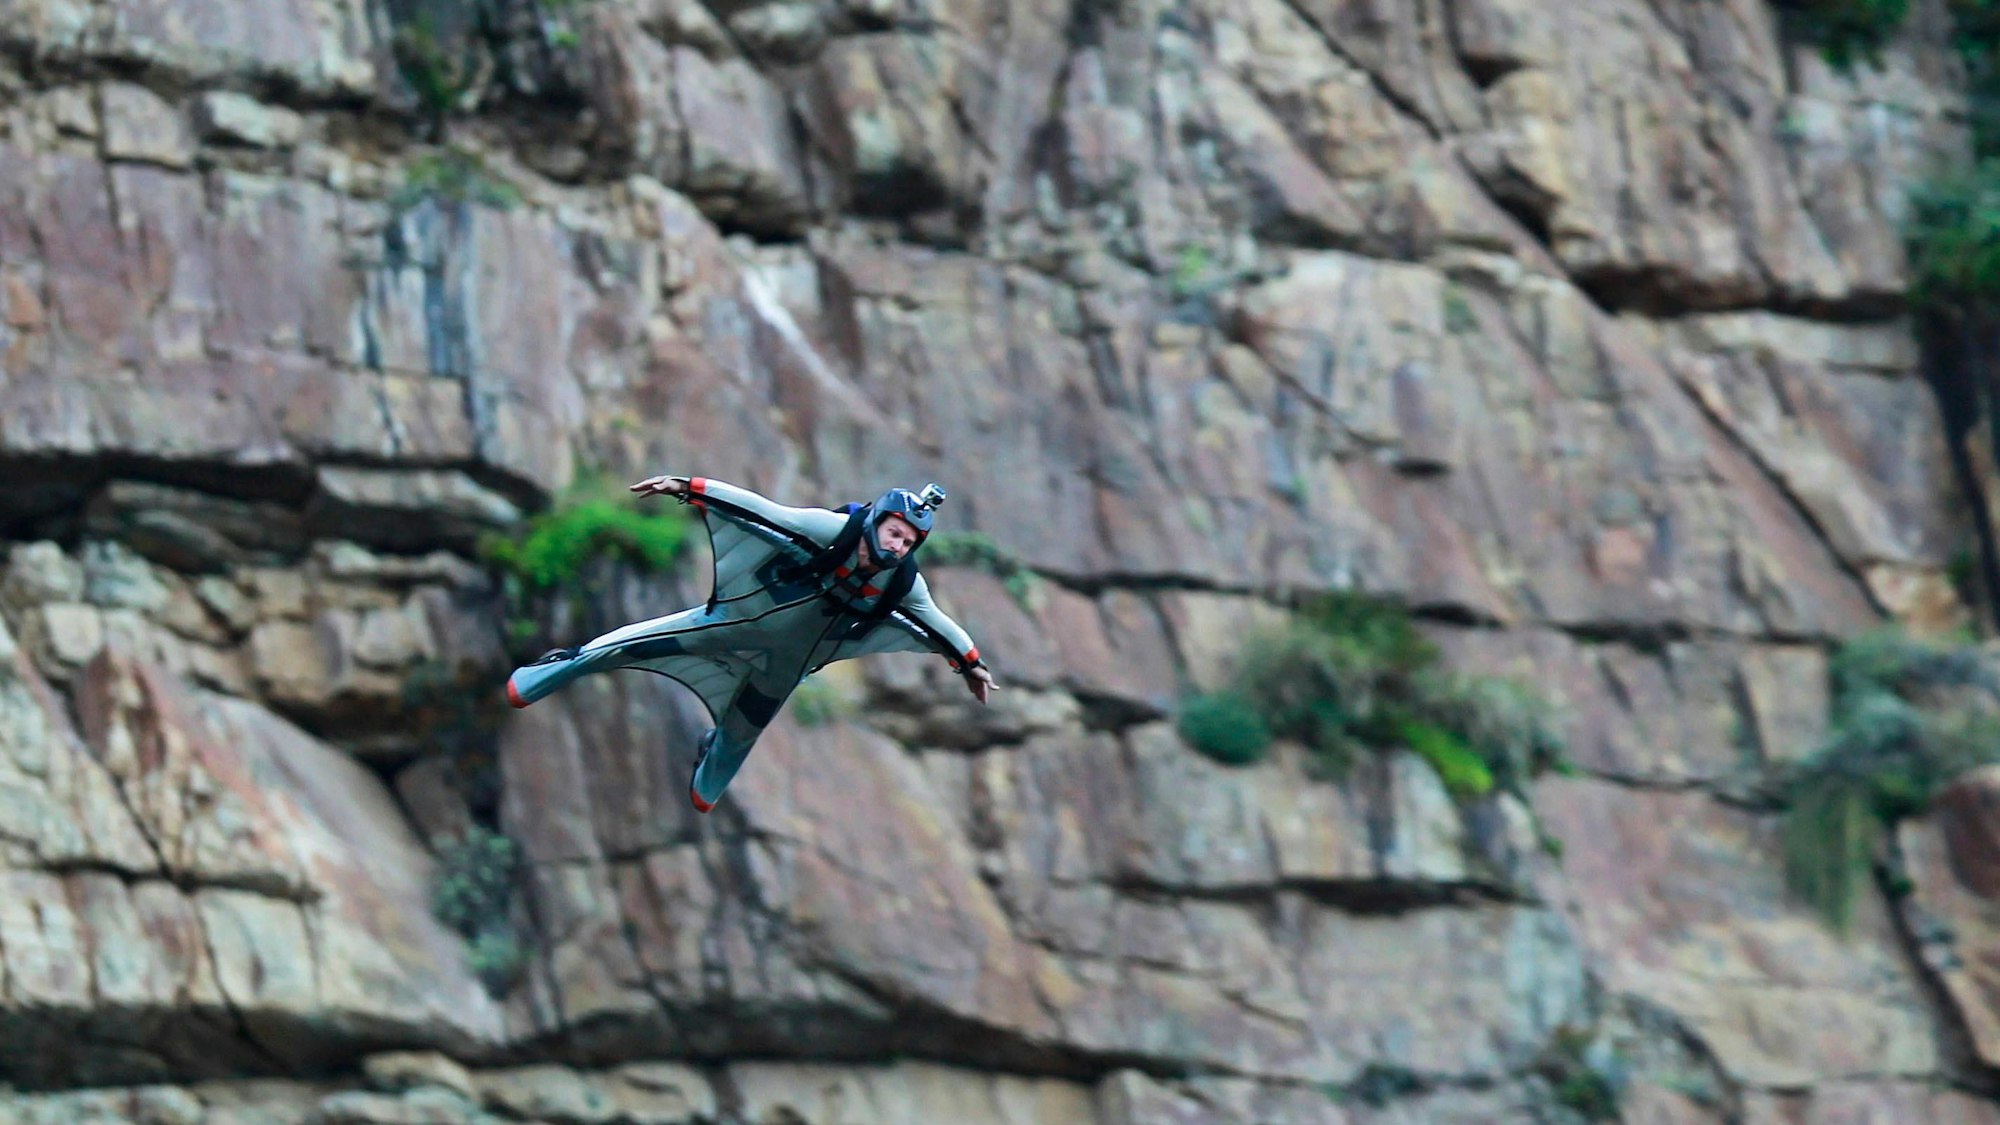 Der südafrikanische Basejumper Leander Lacey fliegt in einem speziell entwickelten Wingsuit, nachdem er von den Klippen des Chapman's Peak, einem Teil des Tafelberg-Nationalparks in Kapstadt, Südafrika, gesprungen ist (05. März 2011).